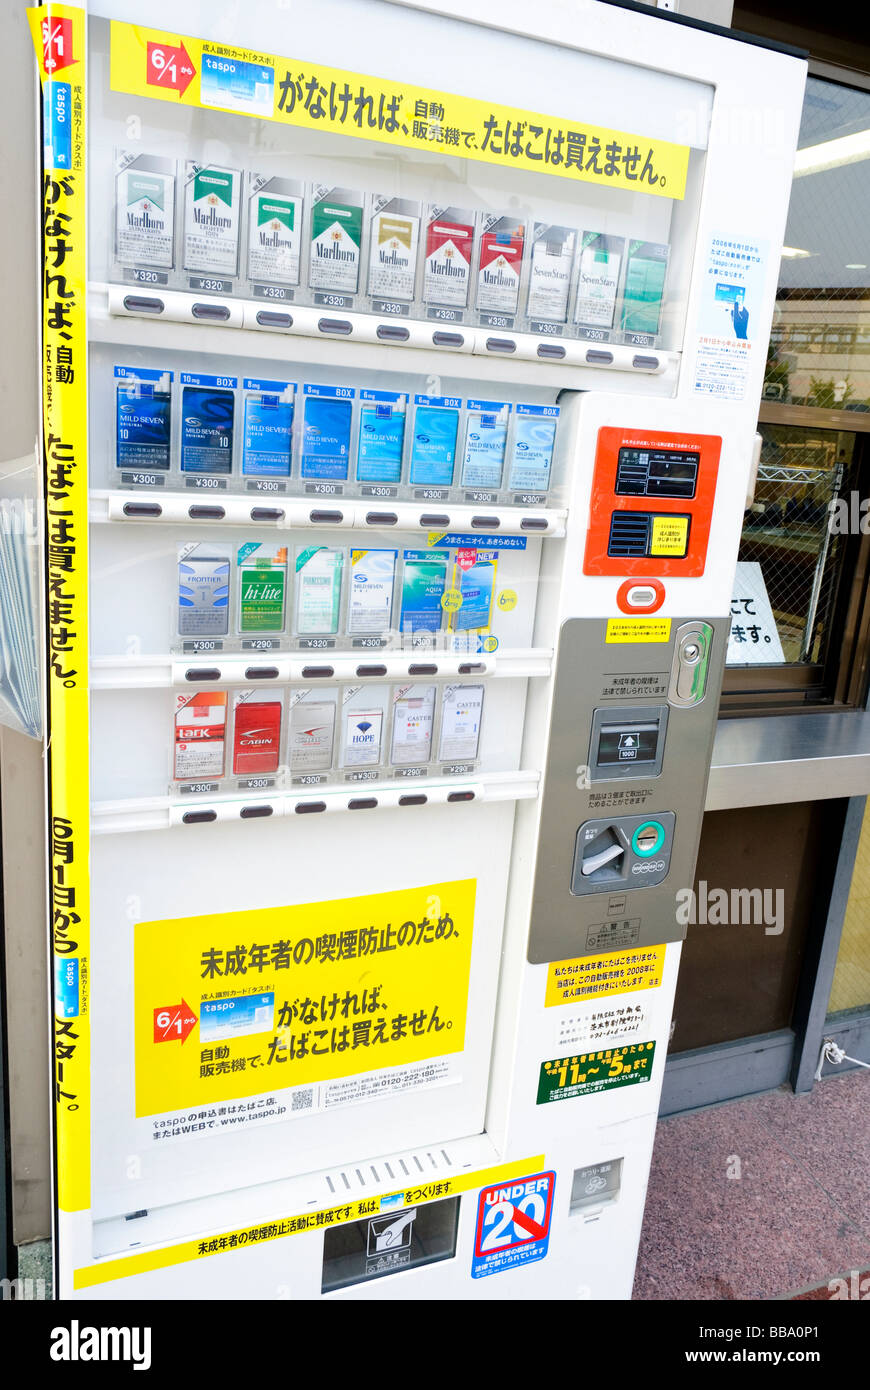 Distributeur automatique de cigarettes dans une rue d'Ibaraki-shi, une banlieue d'Osaka. Ces distributeurs automatiques sont communs dans tout le Japon. Banque D'Images